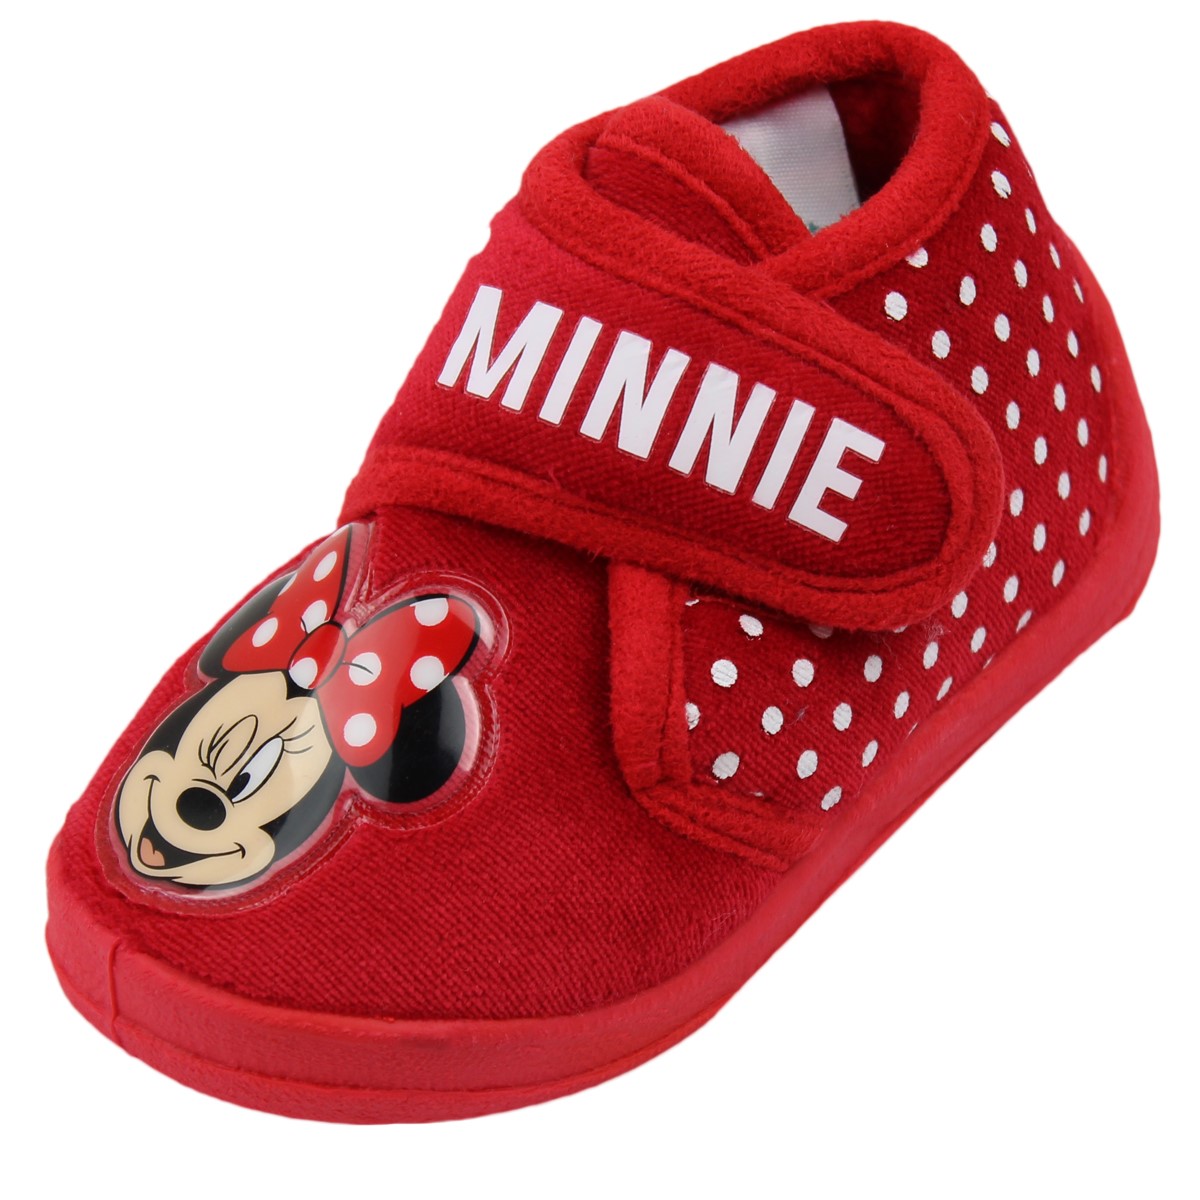 Chausson Minnie Mouse Bébé Fille Petite Frappe Achat et vente